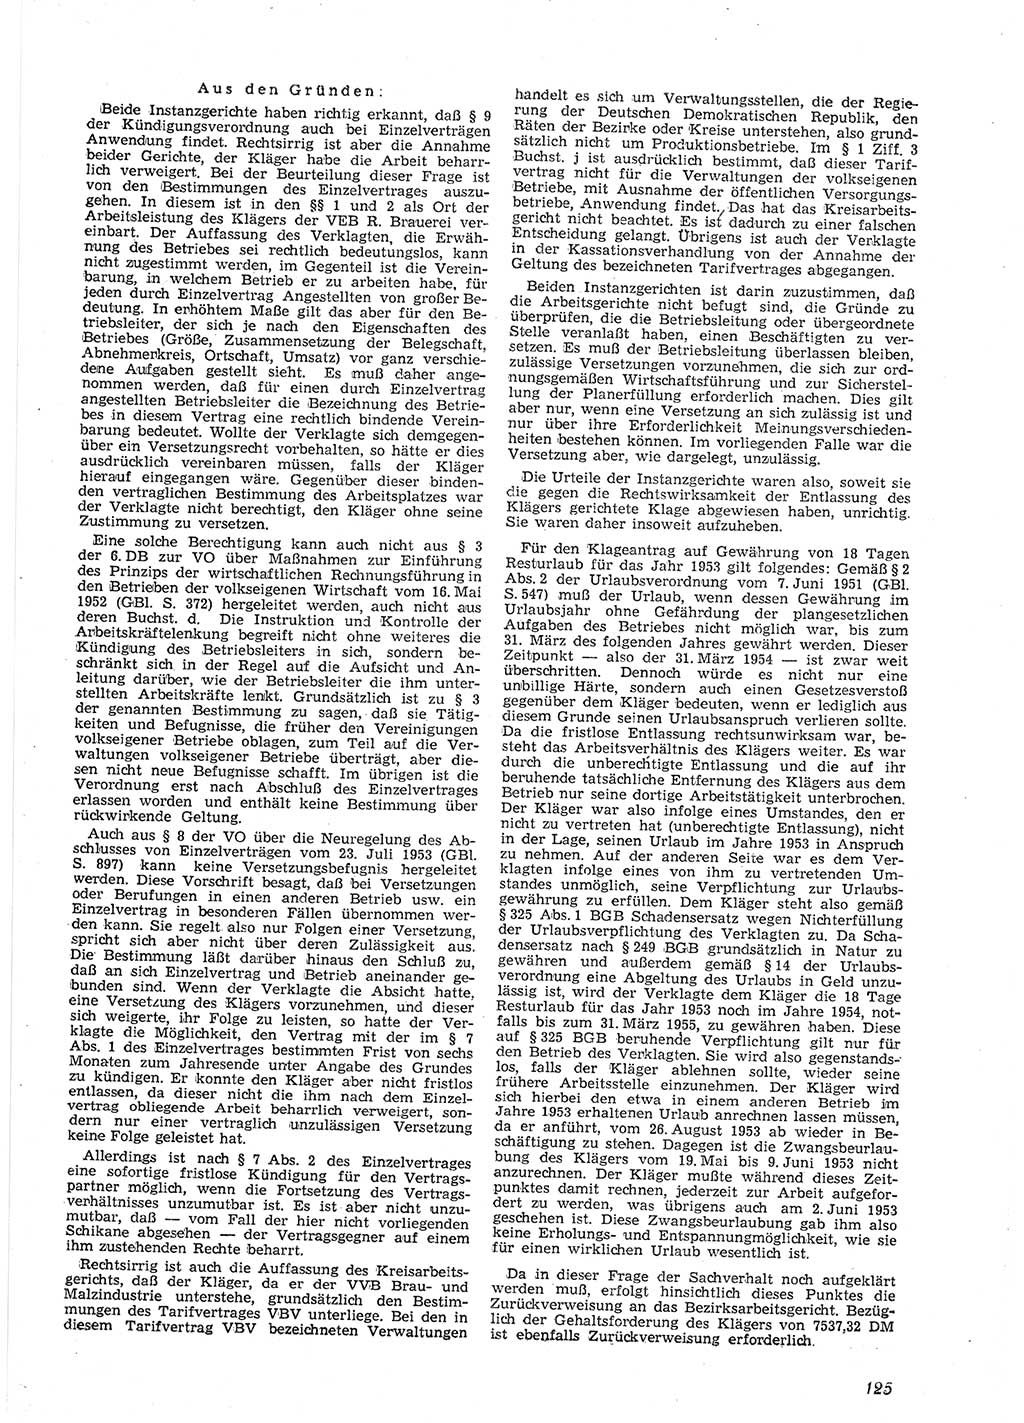 Neue Justiz (NJ), Zeitschrift für Recht und Rechtswissenschaft [Deutsche Demokratische Republik (DDR)], 9. Jahrgang 1955, Seite 125 (NJ DDR 1955, S. 125)